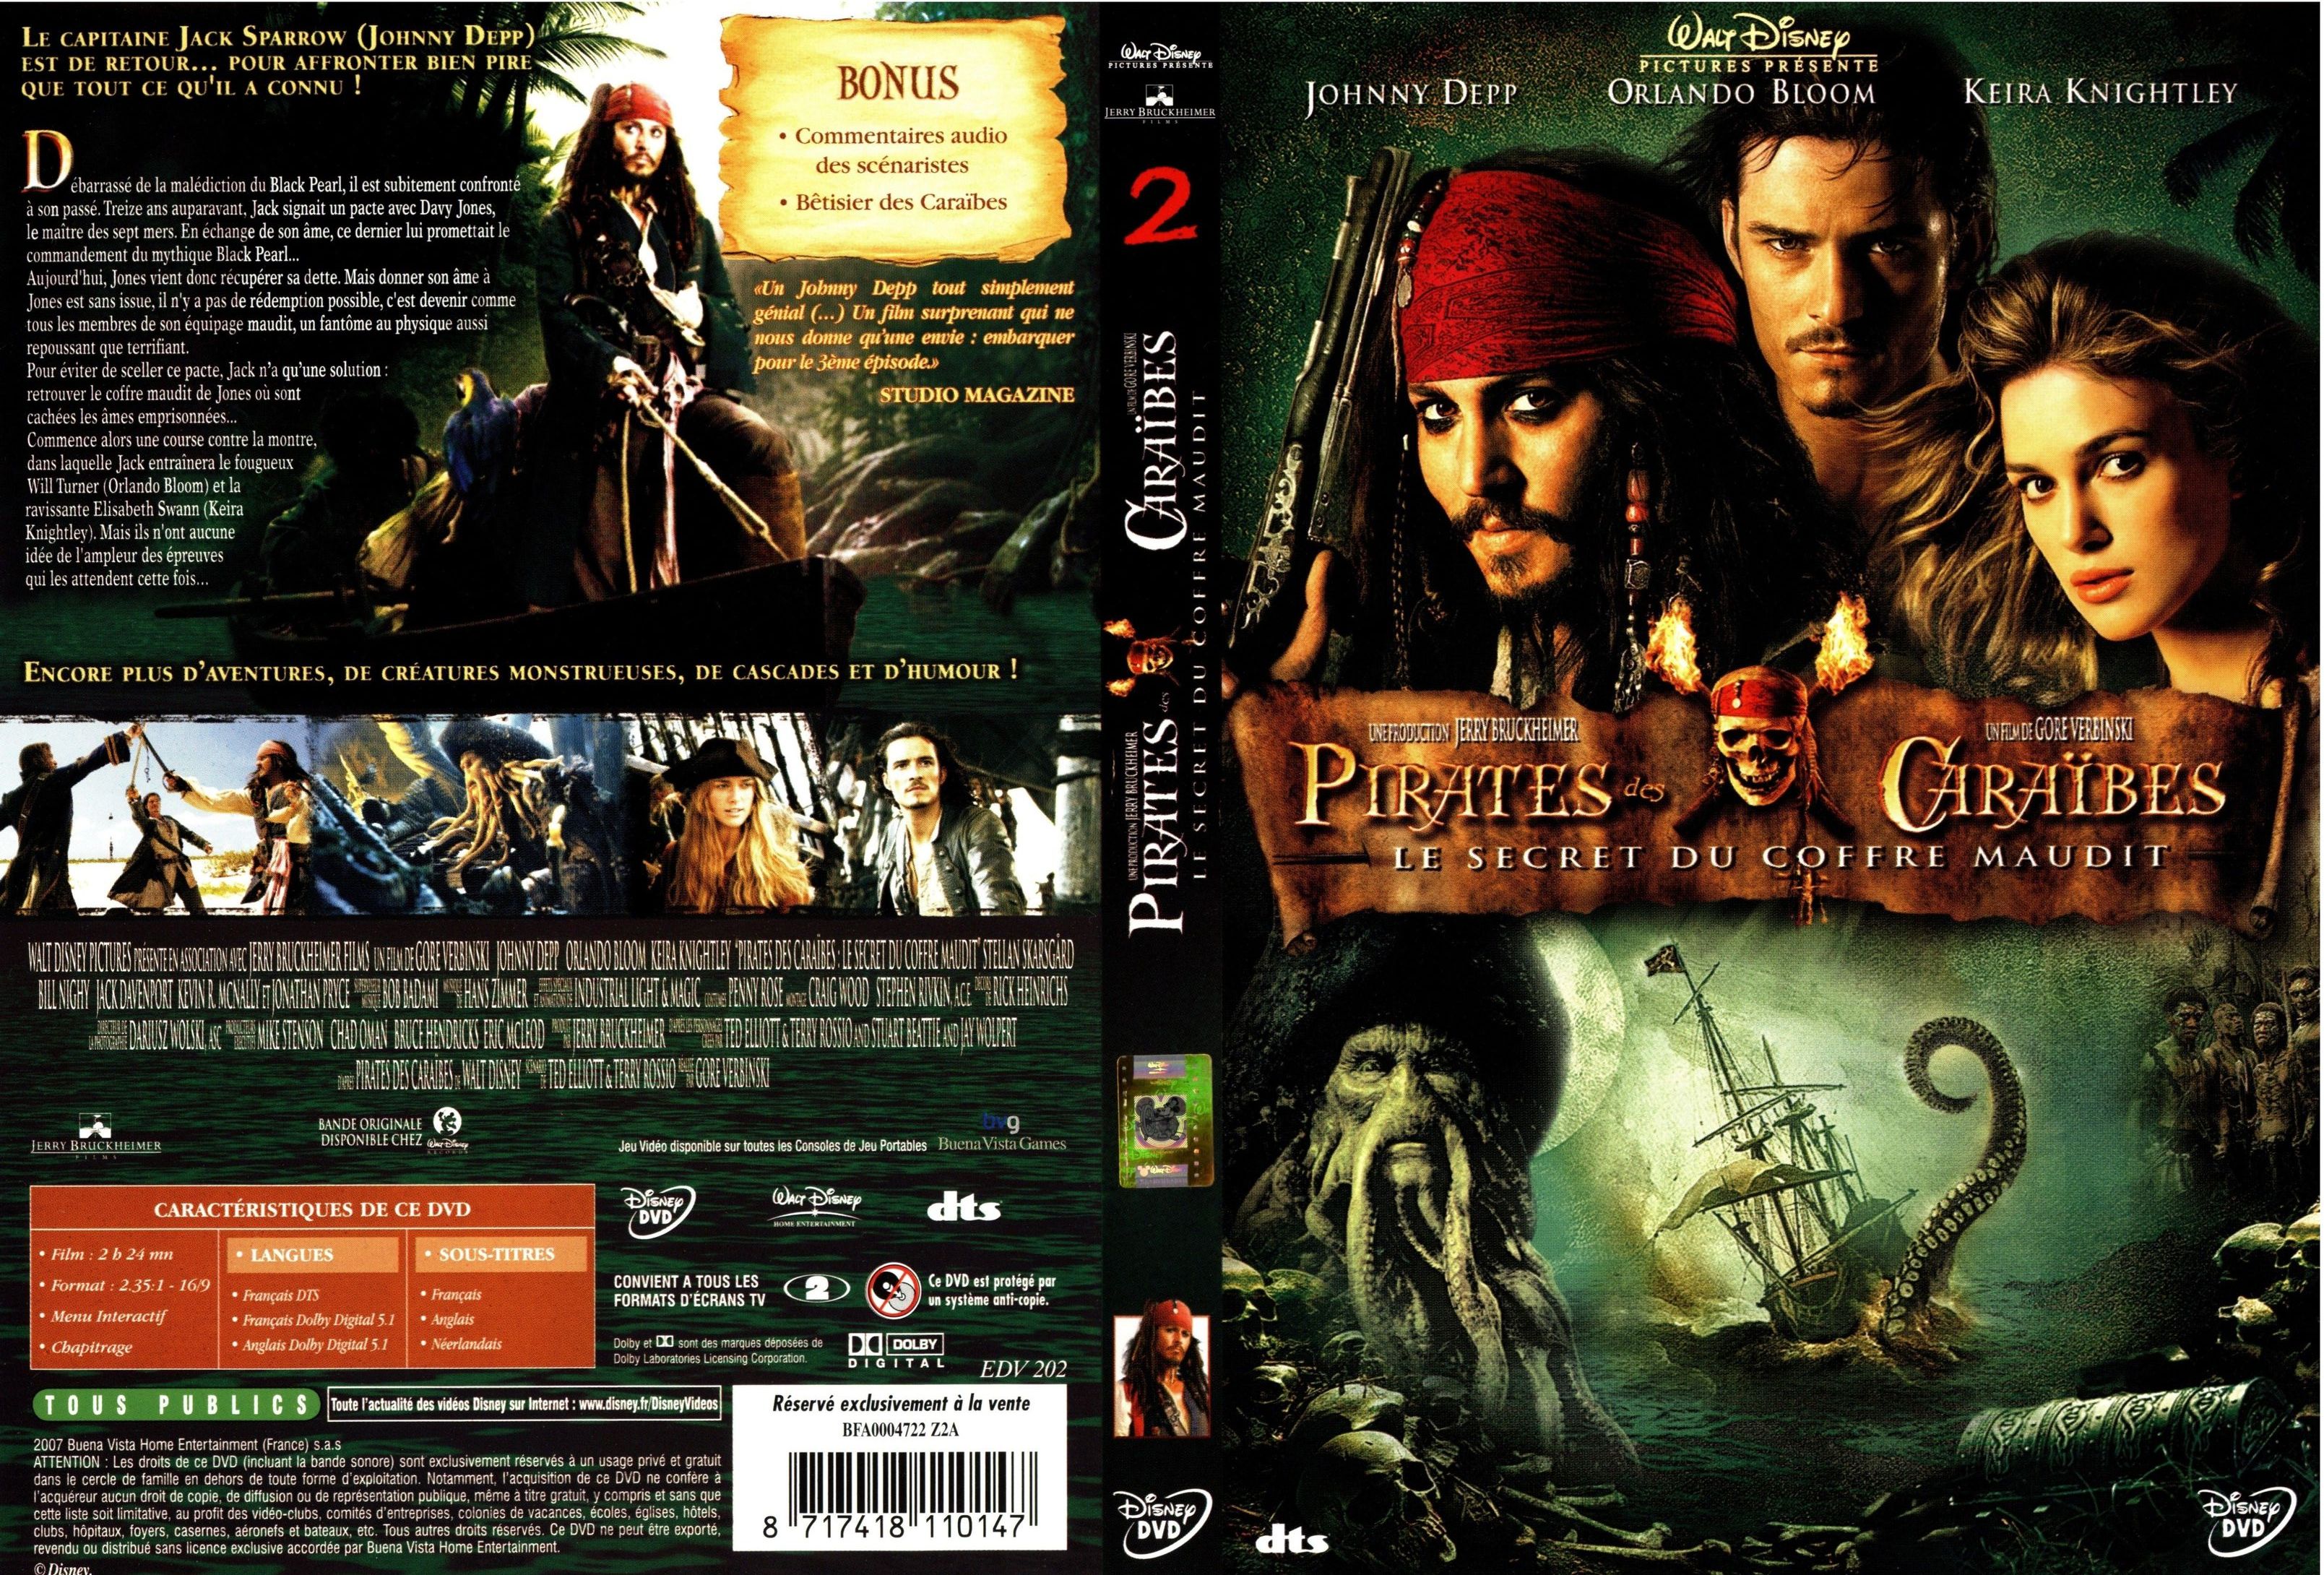 Jaquette DVD Pirates des caraibes 2